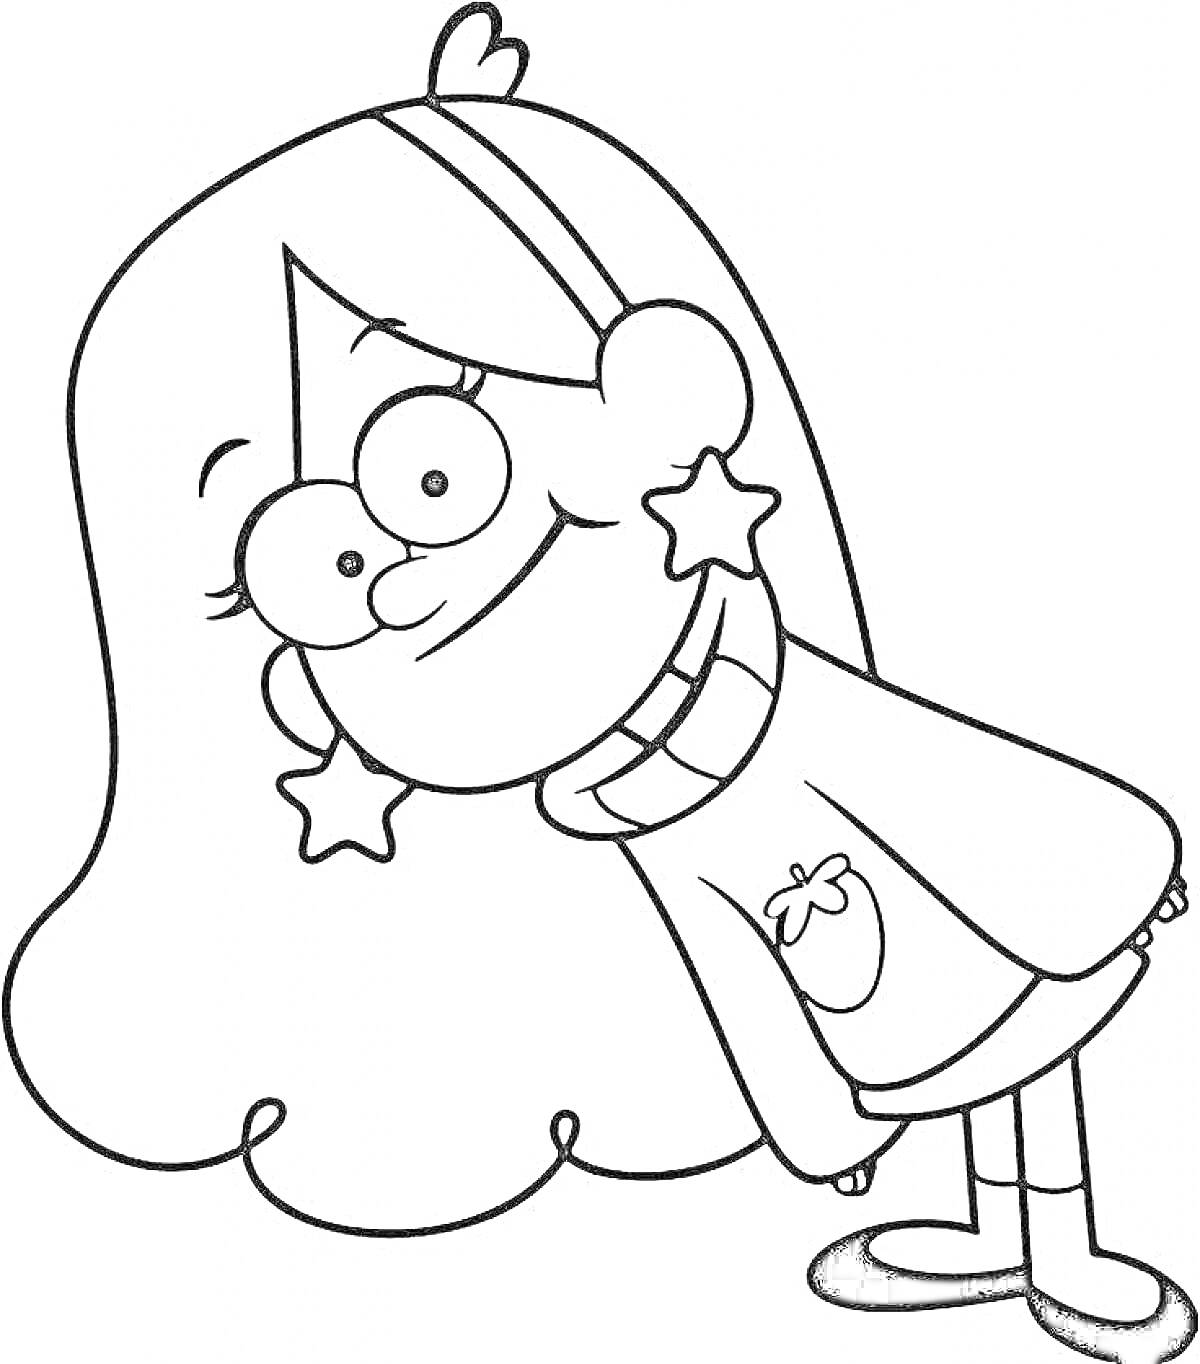 Раскраска Персонаж с длинными волосами, в свитере с изображением клубники и серьгами в виде звезд наклонился вбок